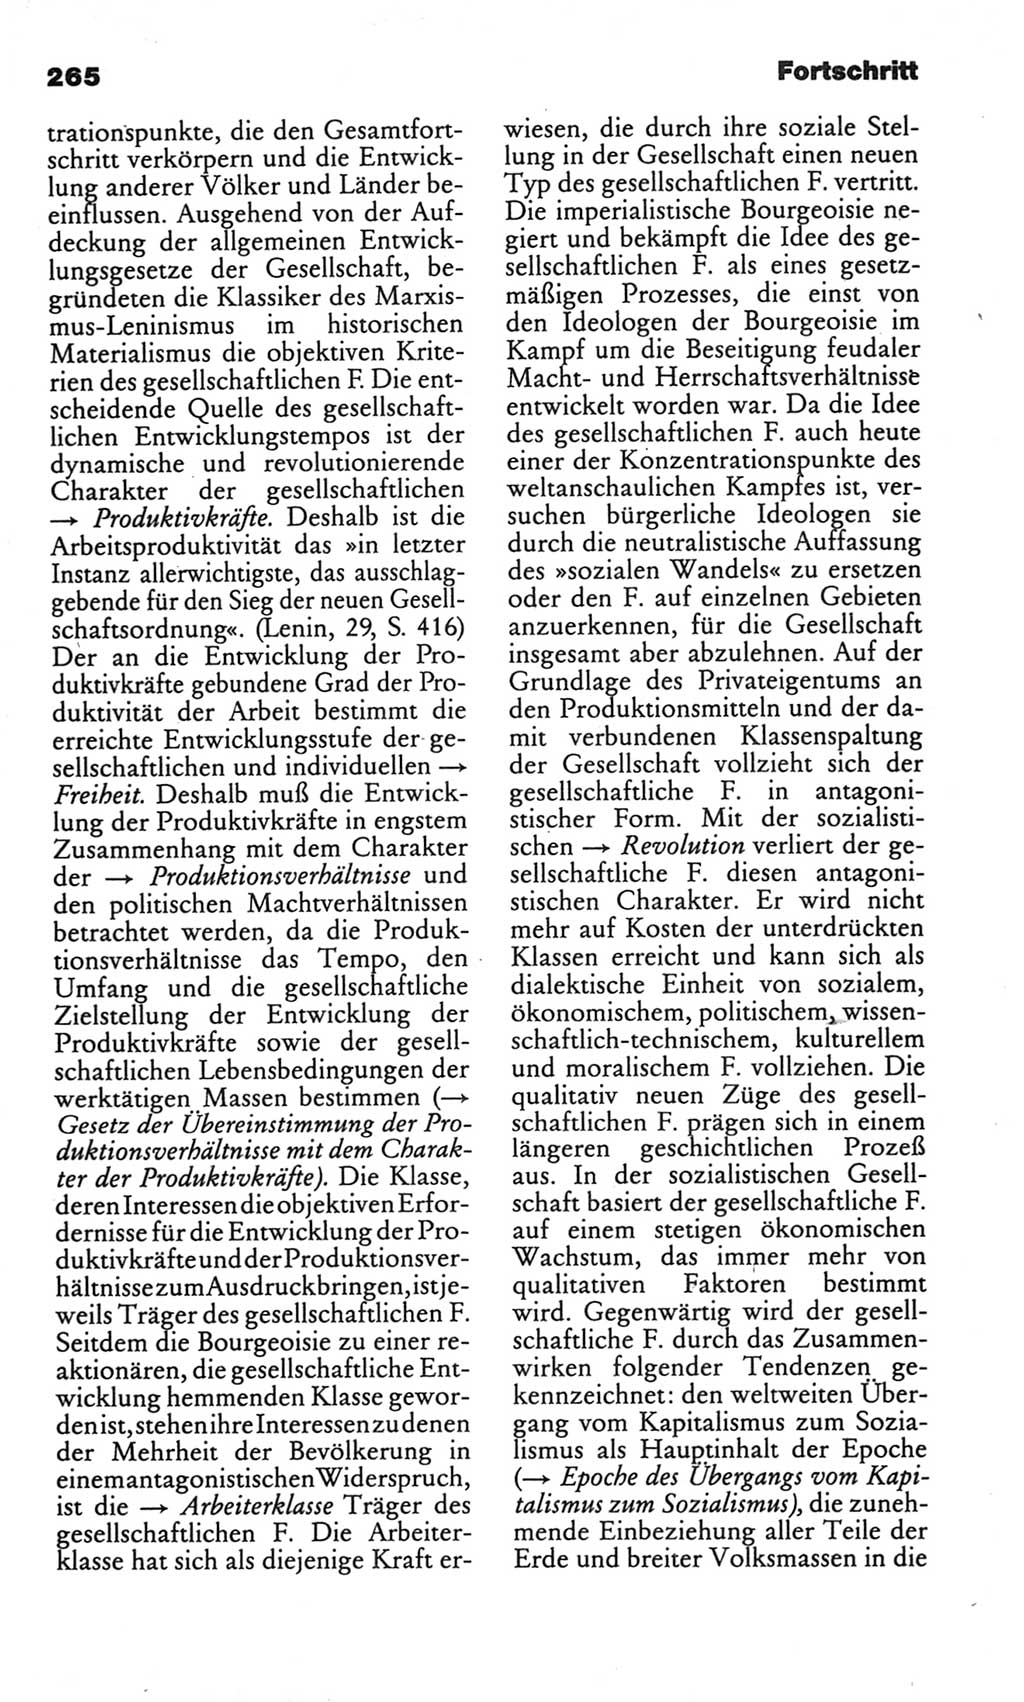 Kleines politisches Wörterbuch [Deutsche Demokratische Republik (DDR)] 1986, Seite 265 (Kl. pol. Wb. DDR 1986, S. 265)